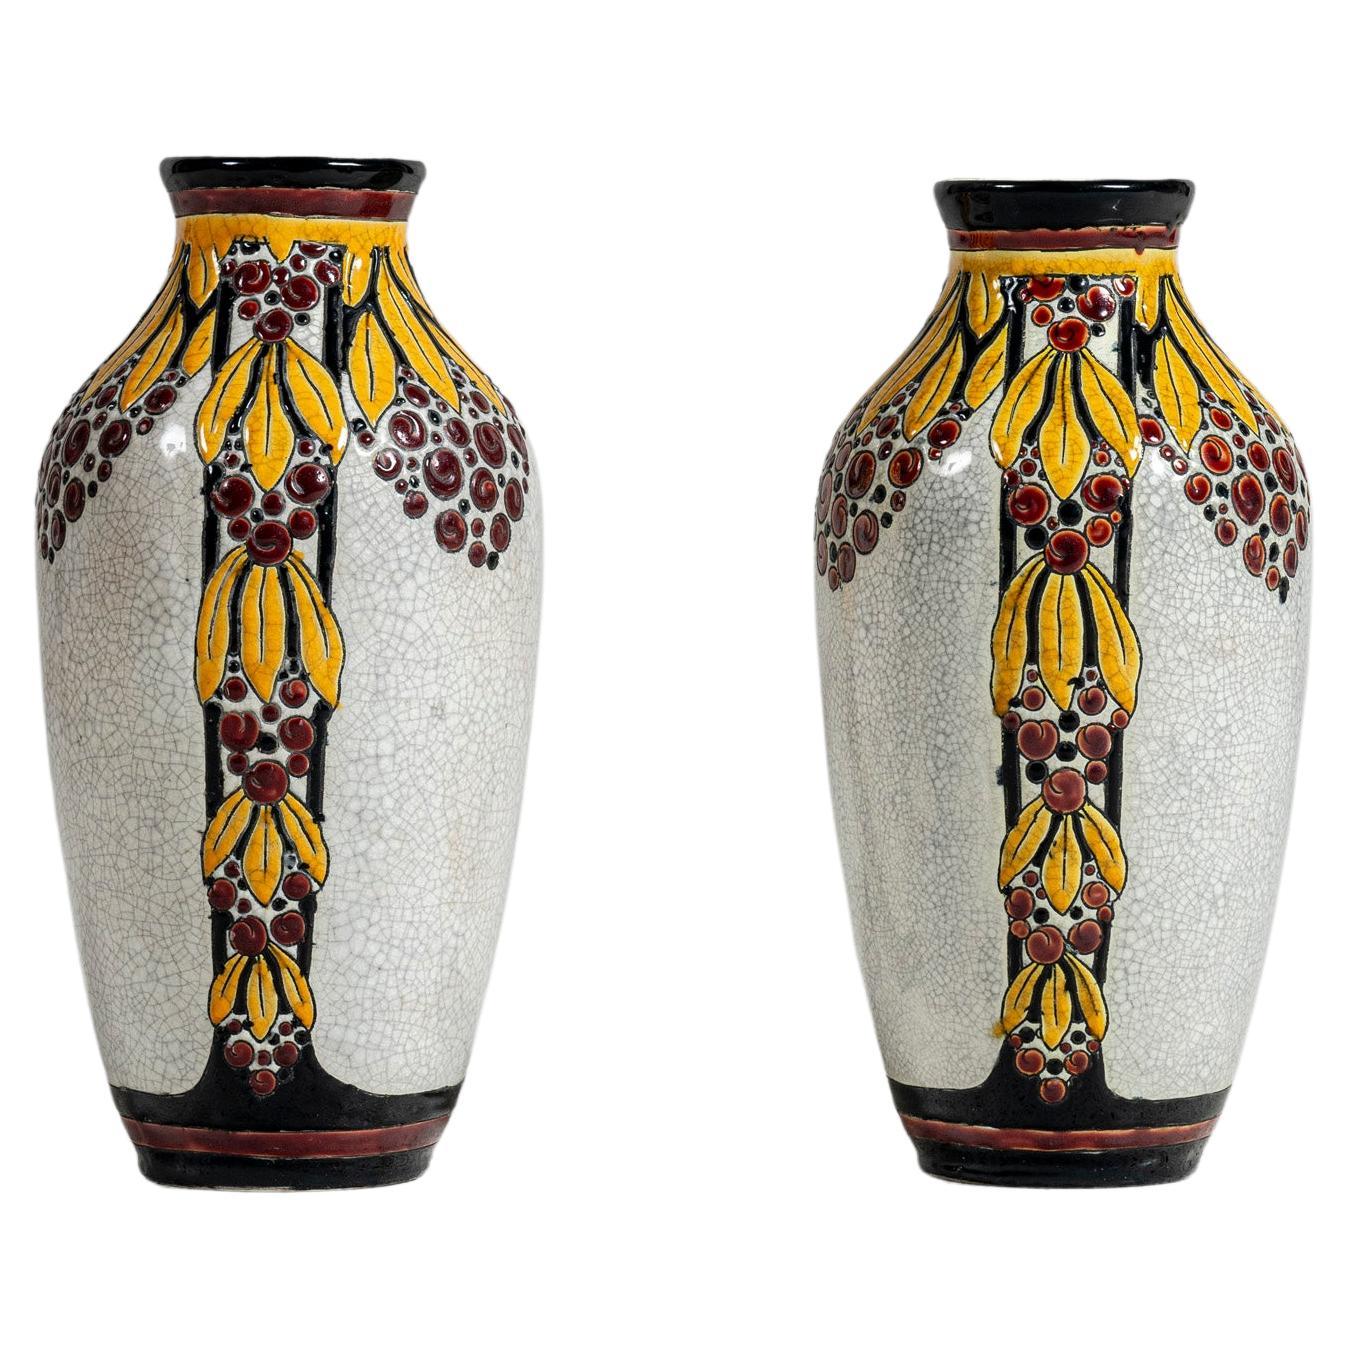 Pair of Enamel Ceramic Flower Vase by Charles Catteau Signed Boch La Louvière. For Sale